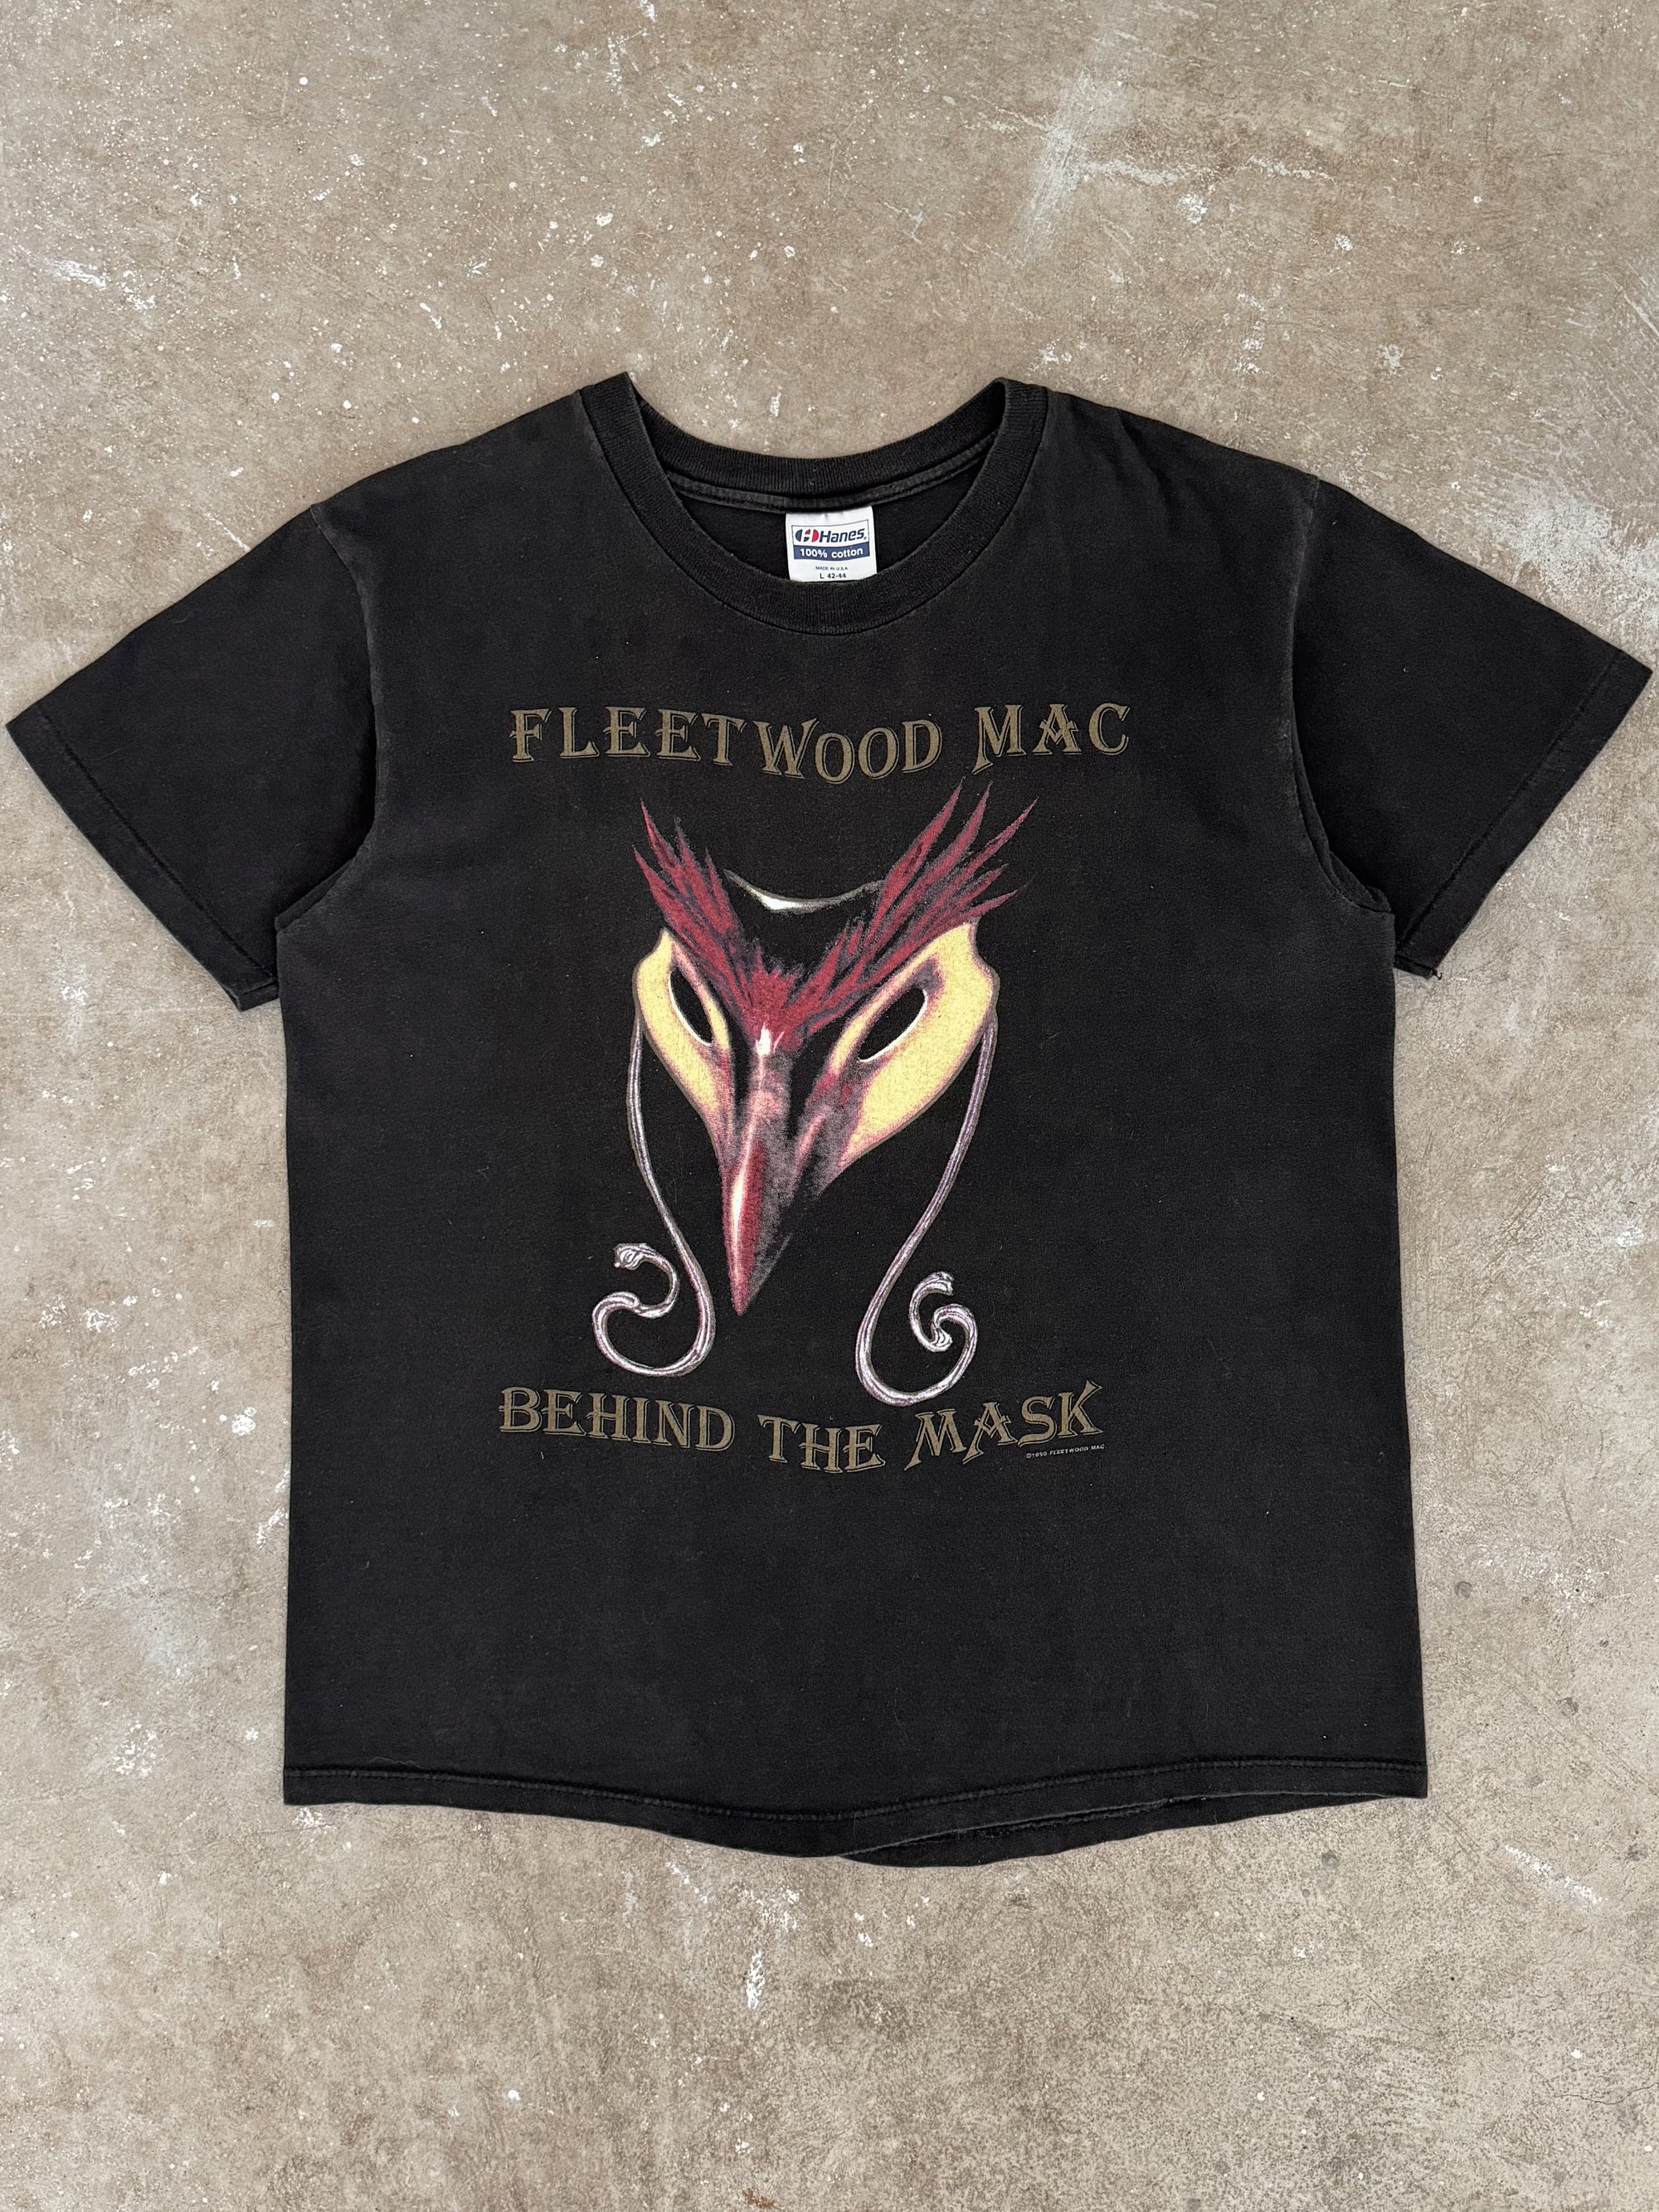 1990s Fleetwood Mac "Behind the Mask" Tee (M)